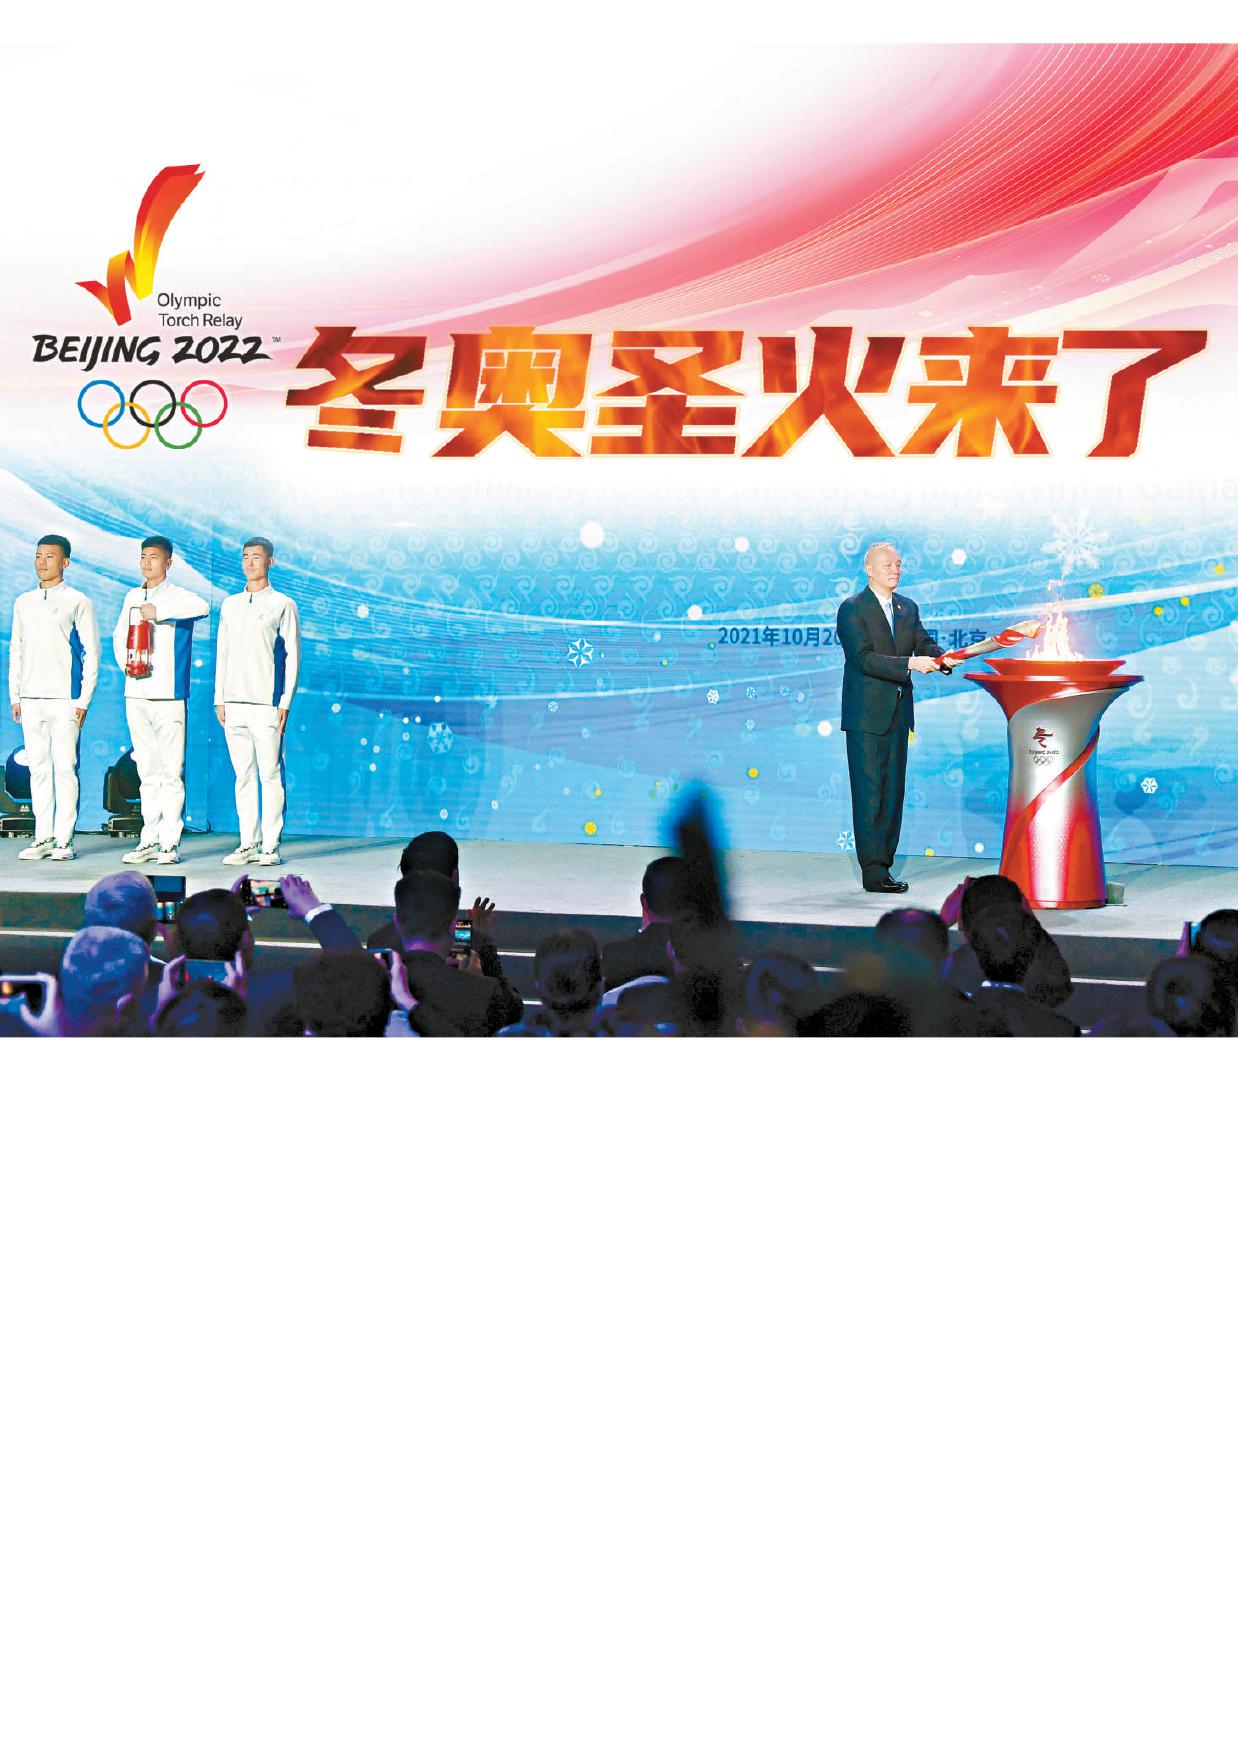 今天上午,北京2022年冬奥会火种抵达北京,北京冬奥会火种欢迎仪式在